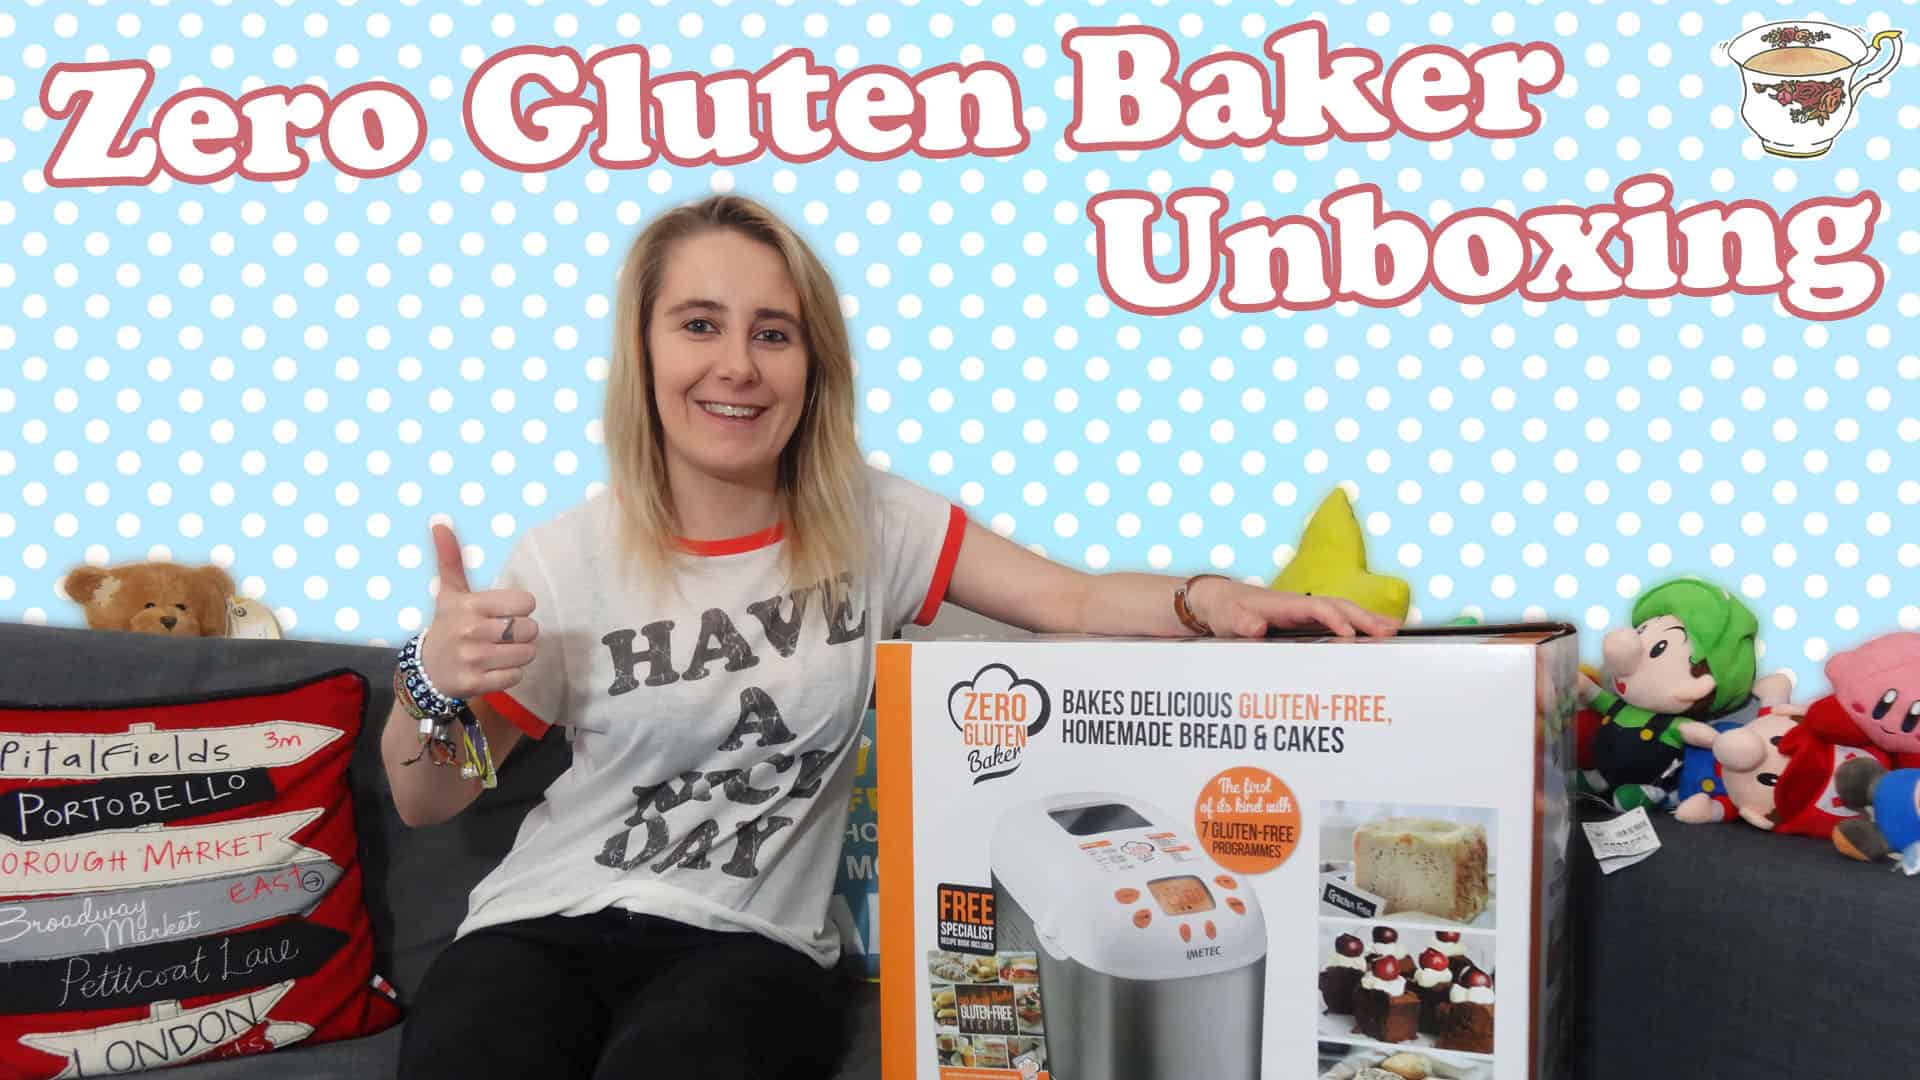 A Gluten Free Bread Maker? Zero Gluten Baker.